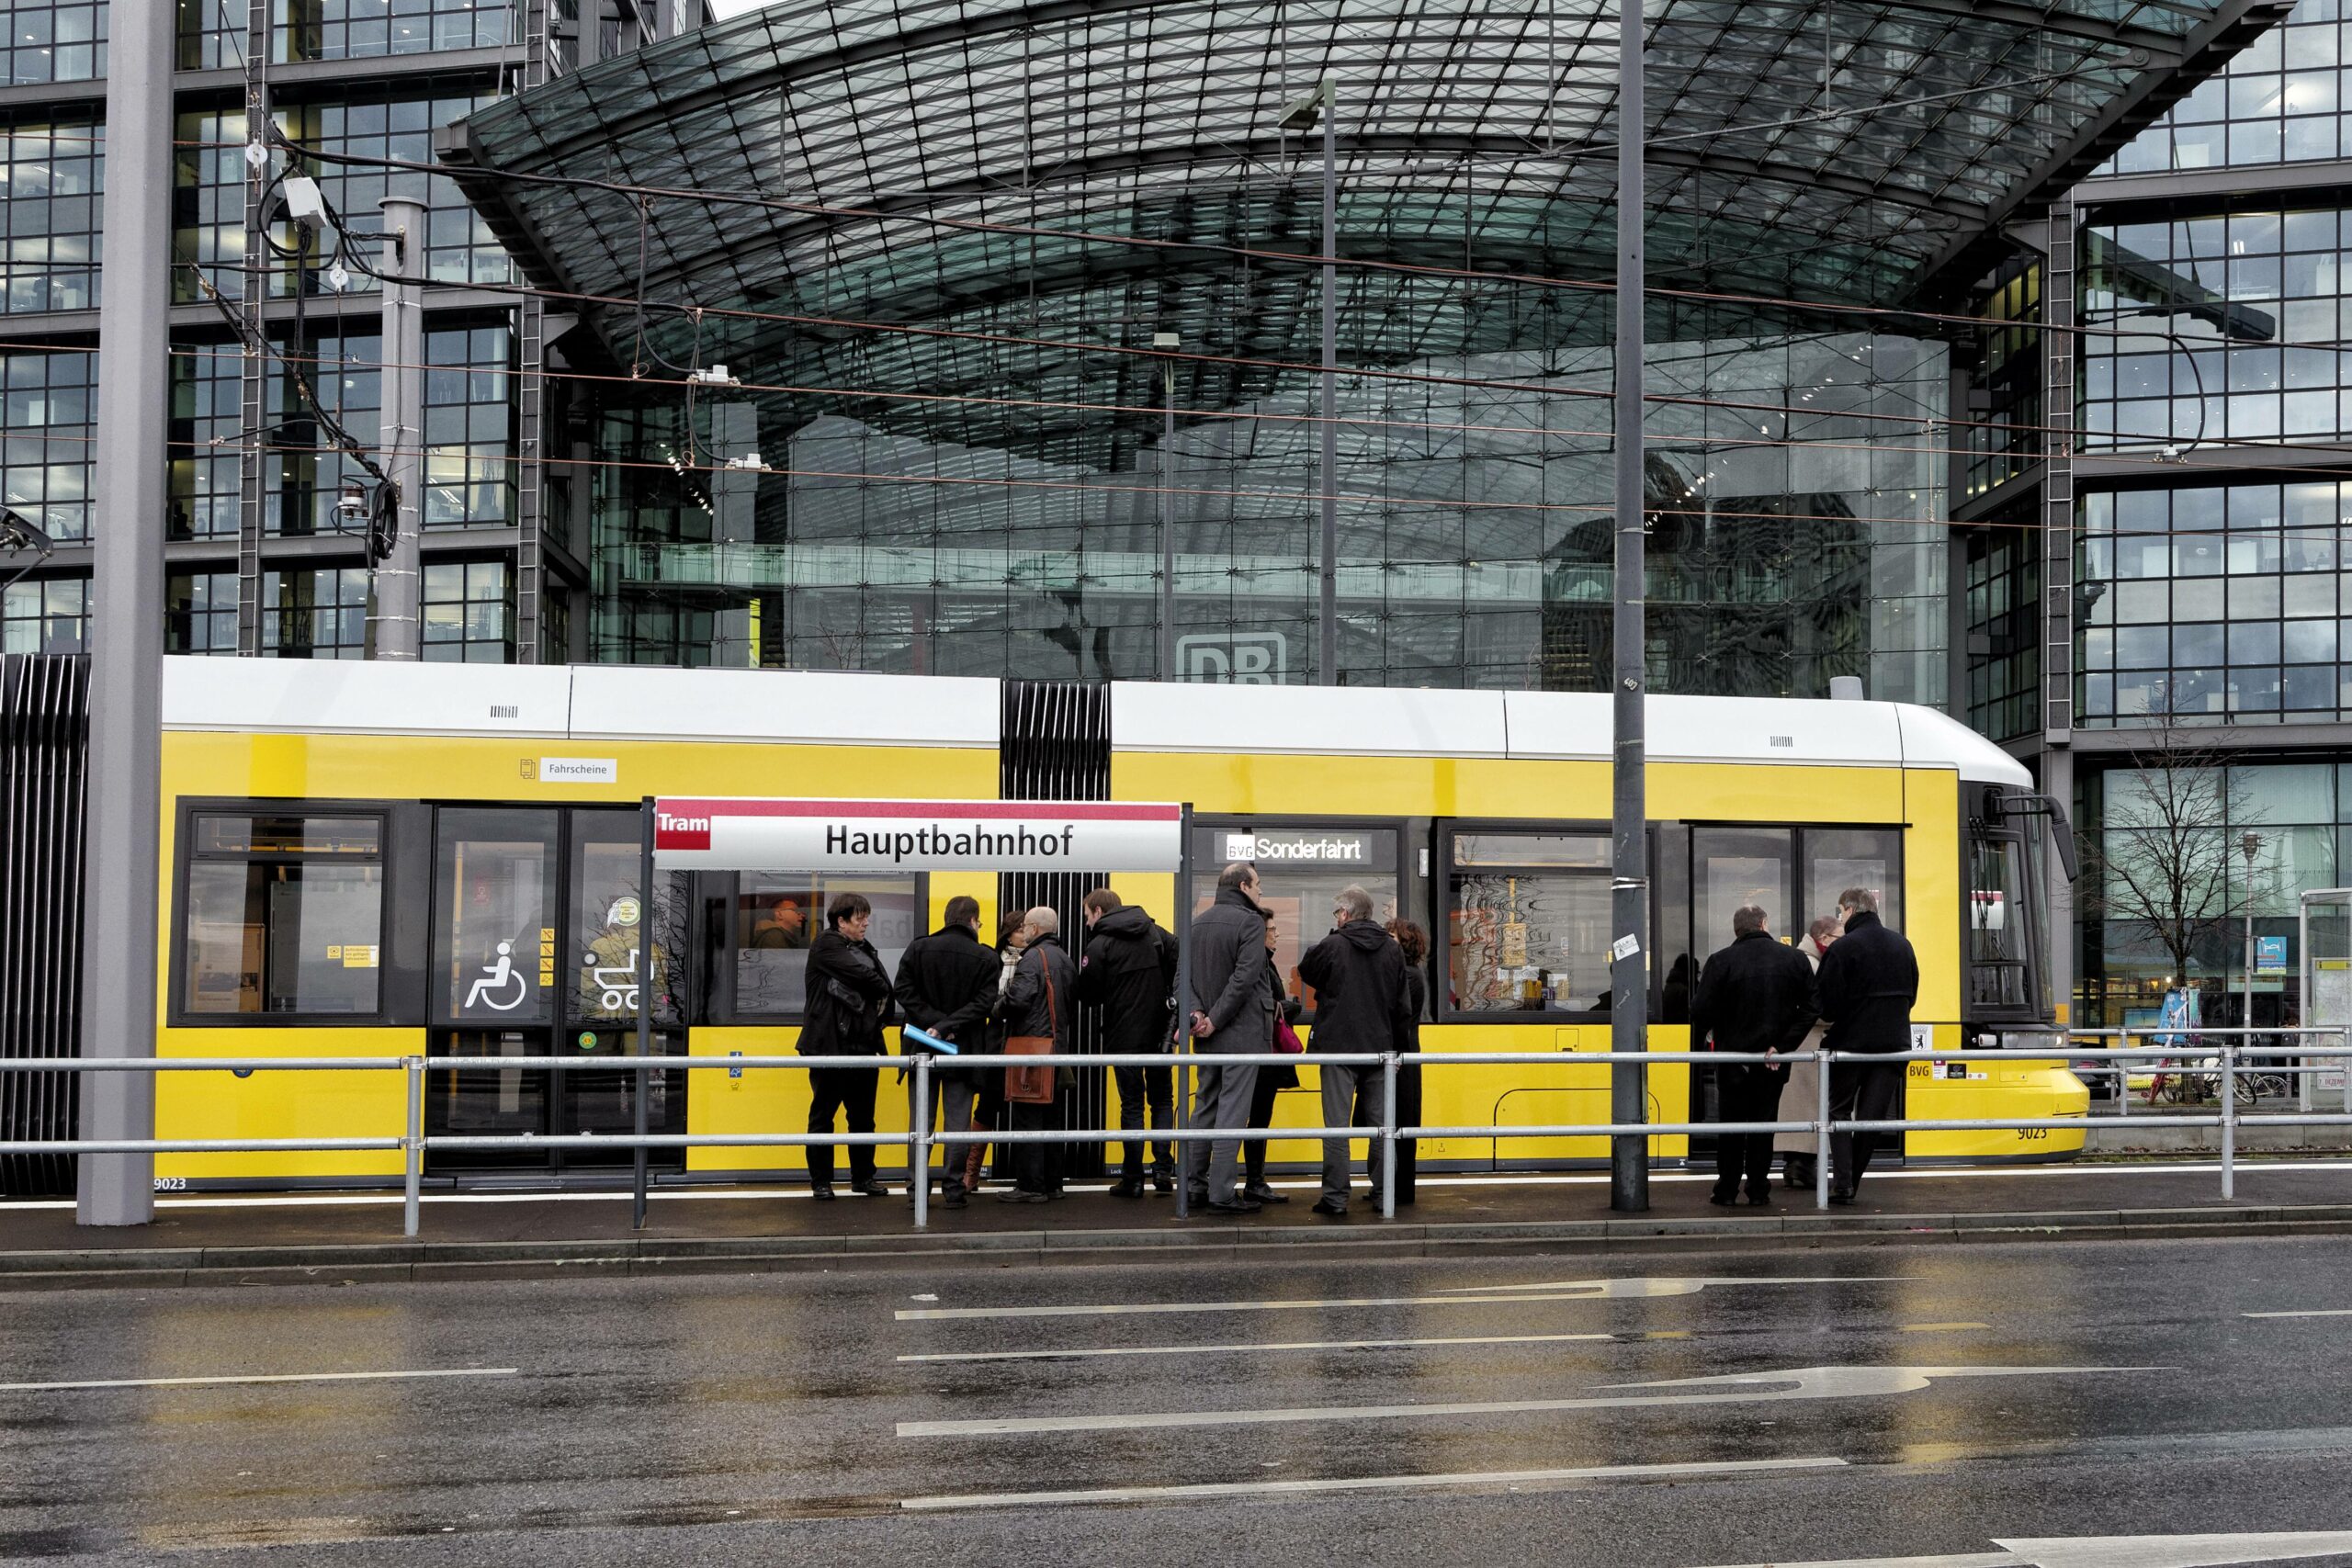 Die neue Tram an der Haltestelle vor dem Hauptbahnhof, Dezember 2014. Foto: Imago/Jürgen Heinrich